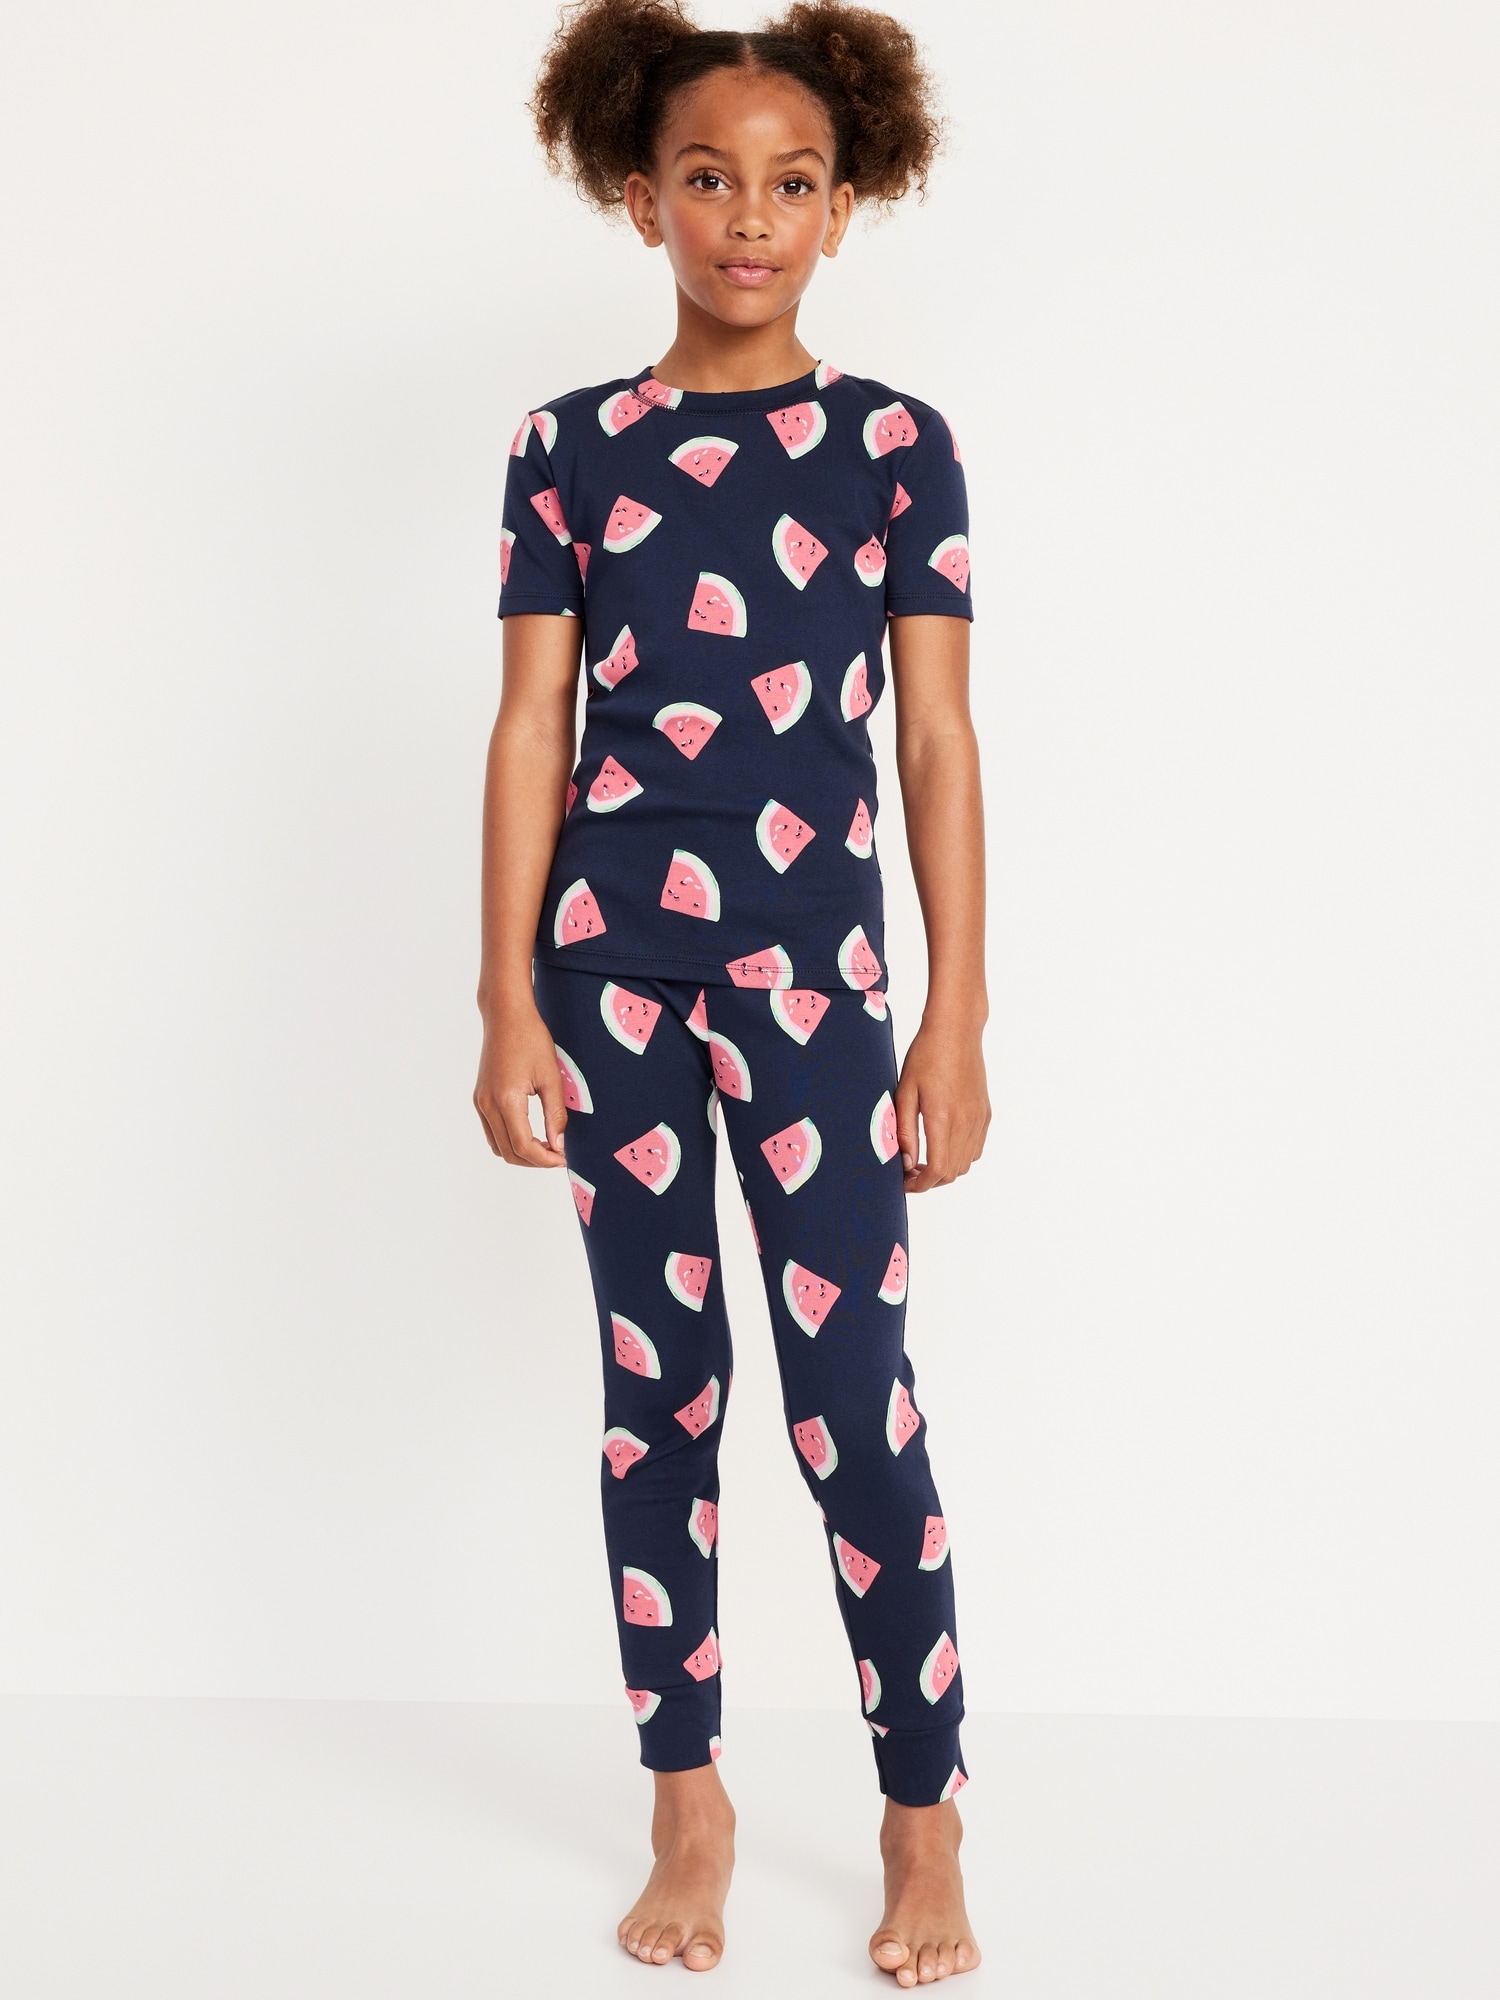 Printed Snug-Fit Pajama Set for Girls